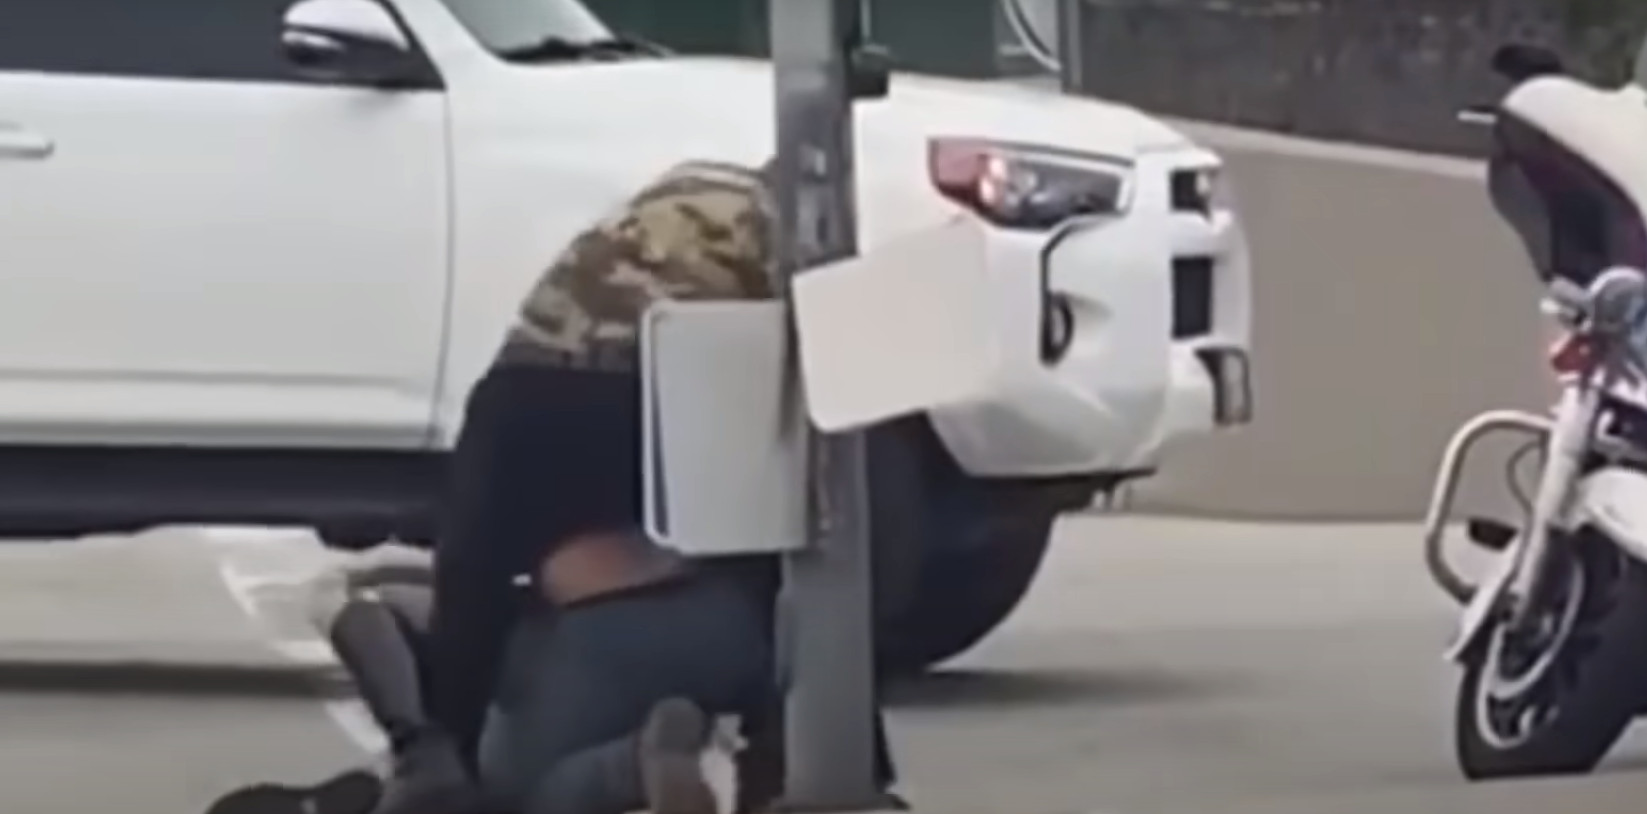 Θαρραλέοι πολίτες σώζουν αστυνομικό από άγριο ξυλοδαρμό στην Καλιφόρνια - Δείτε βίντεο